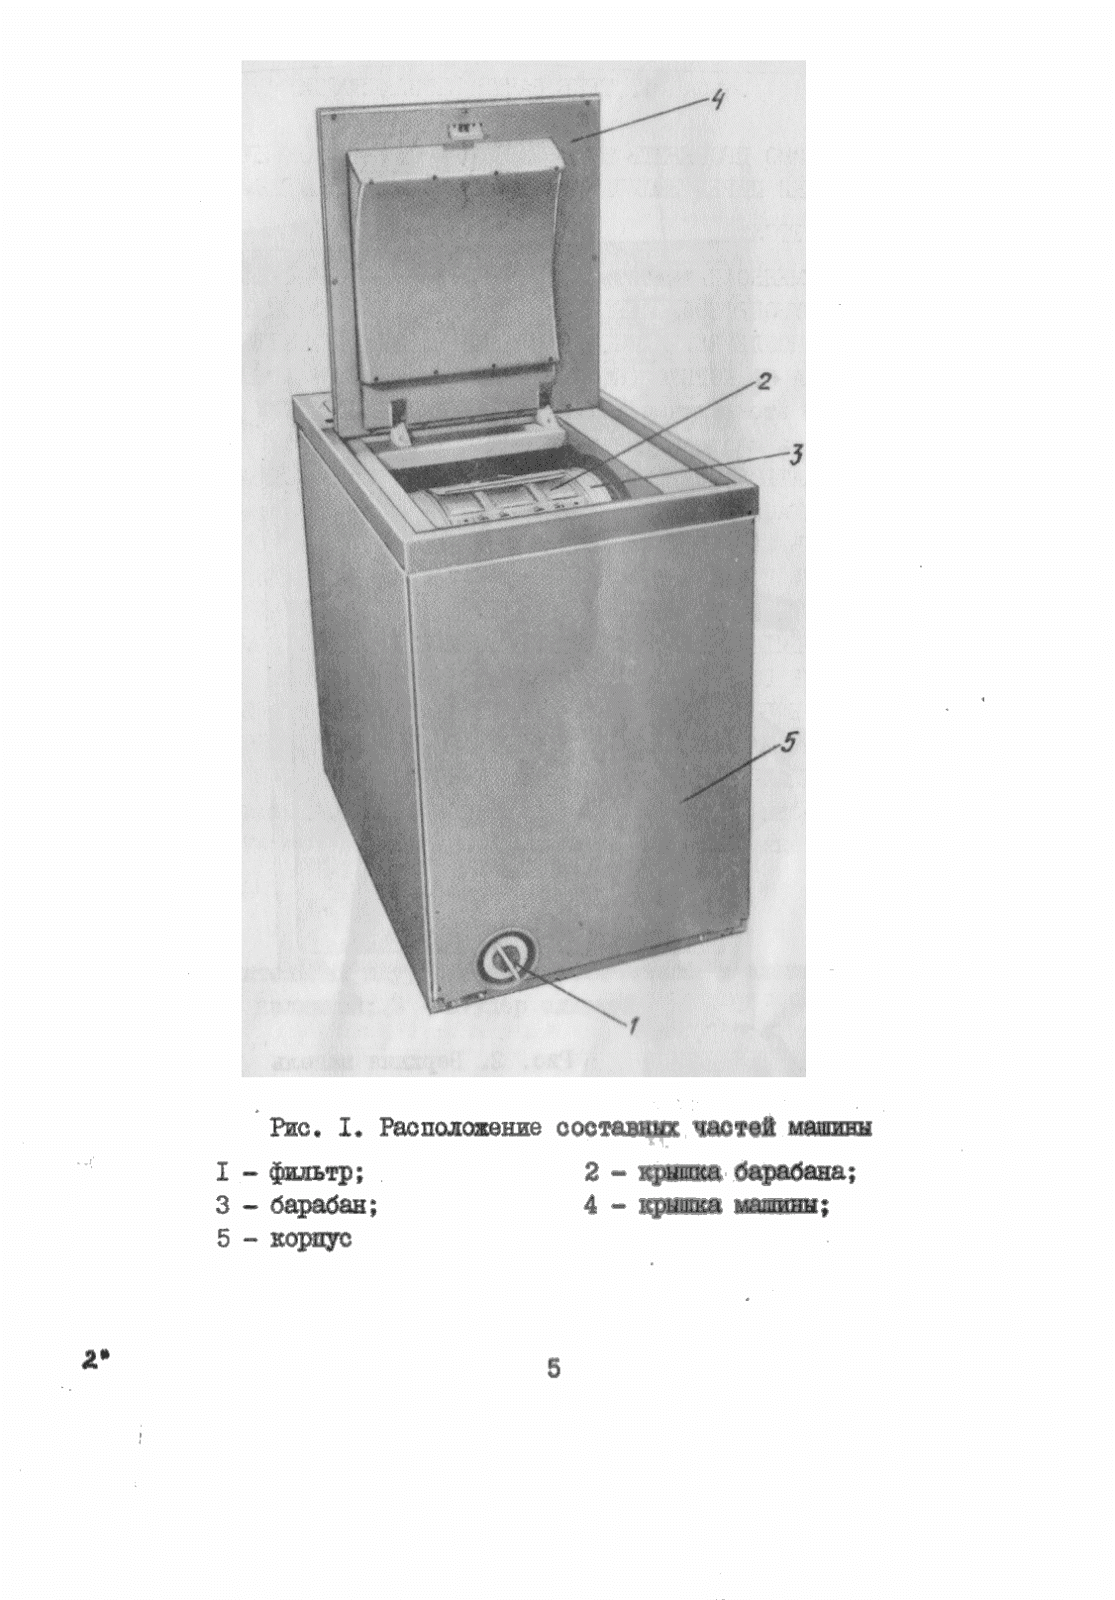 Как пользоваться стиральной машиной candy: первый запуск стиралки канди, подготовка белья, инструкция по использованию и уходу за бытовым прибором